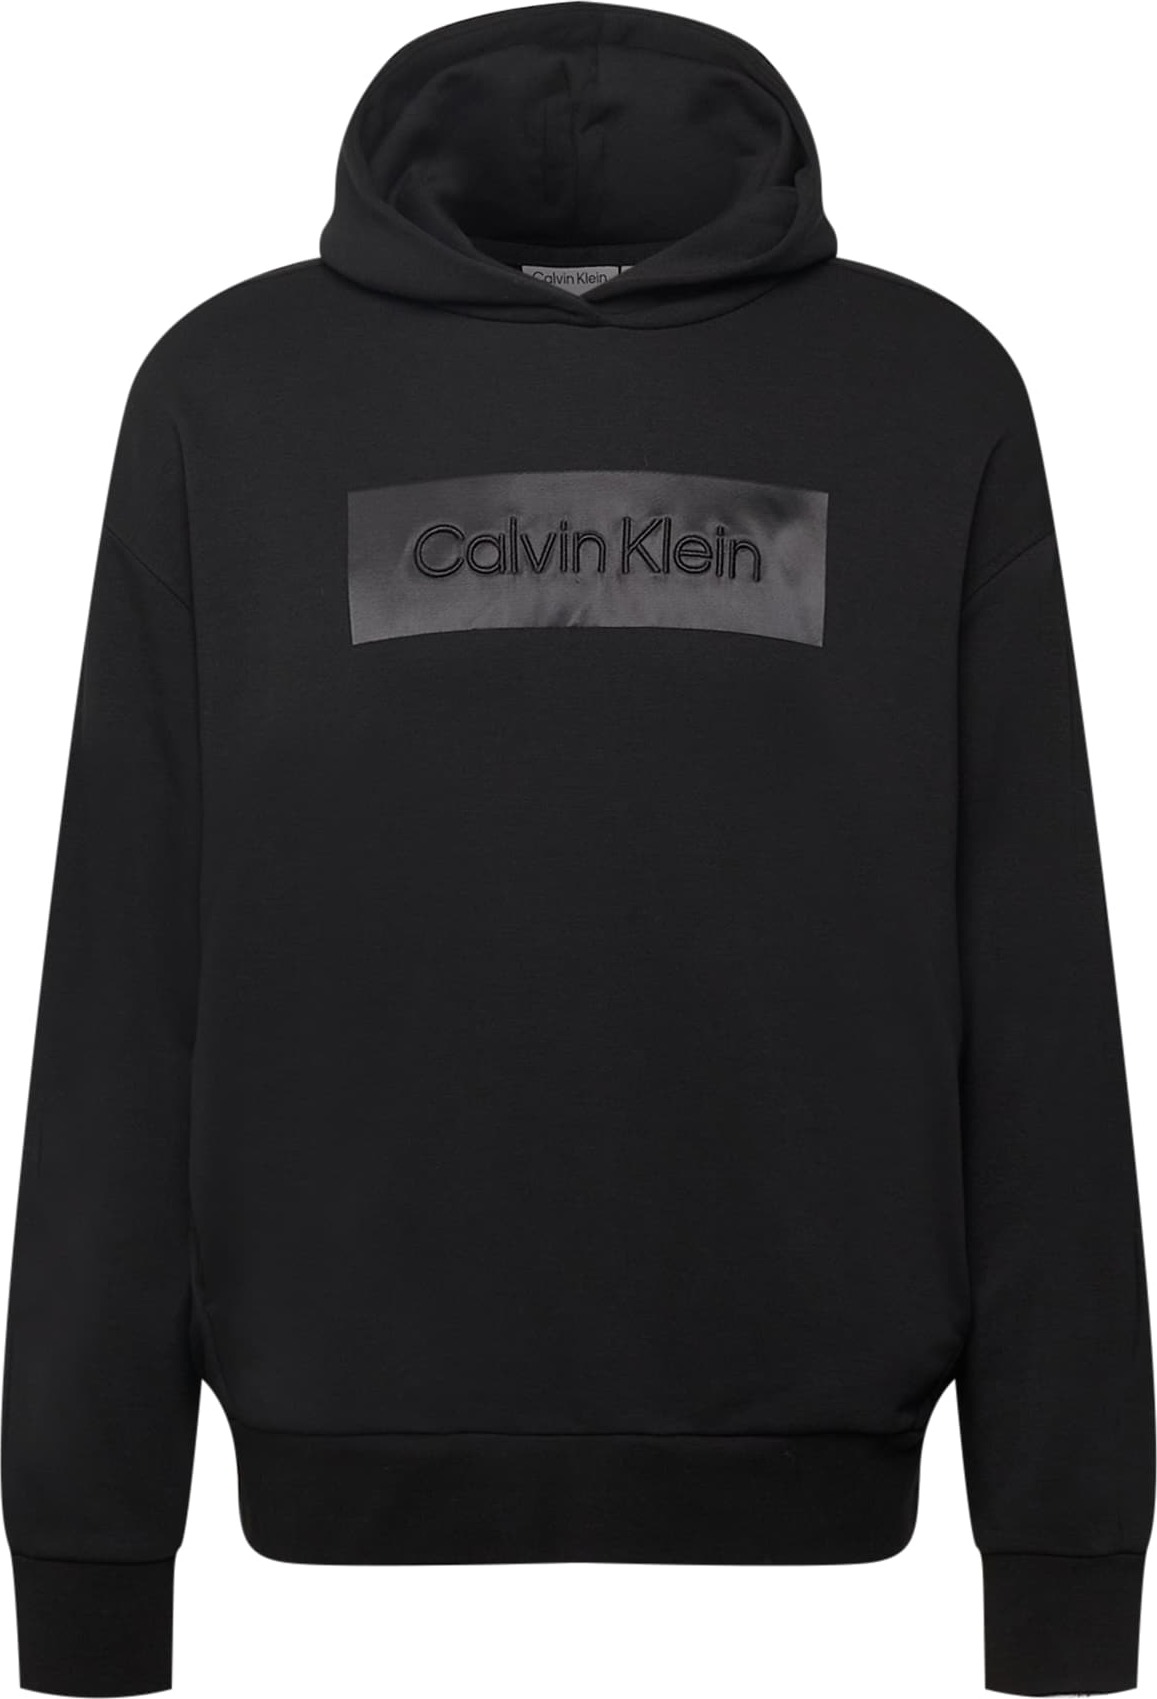 Mikina Calvin Klein tmavě šedá / černá